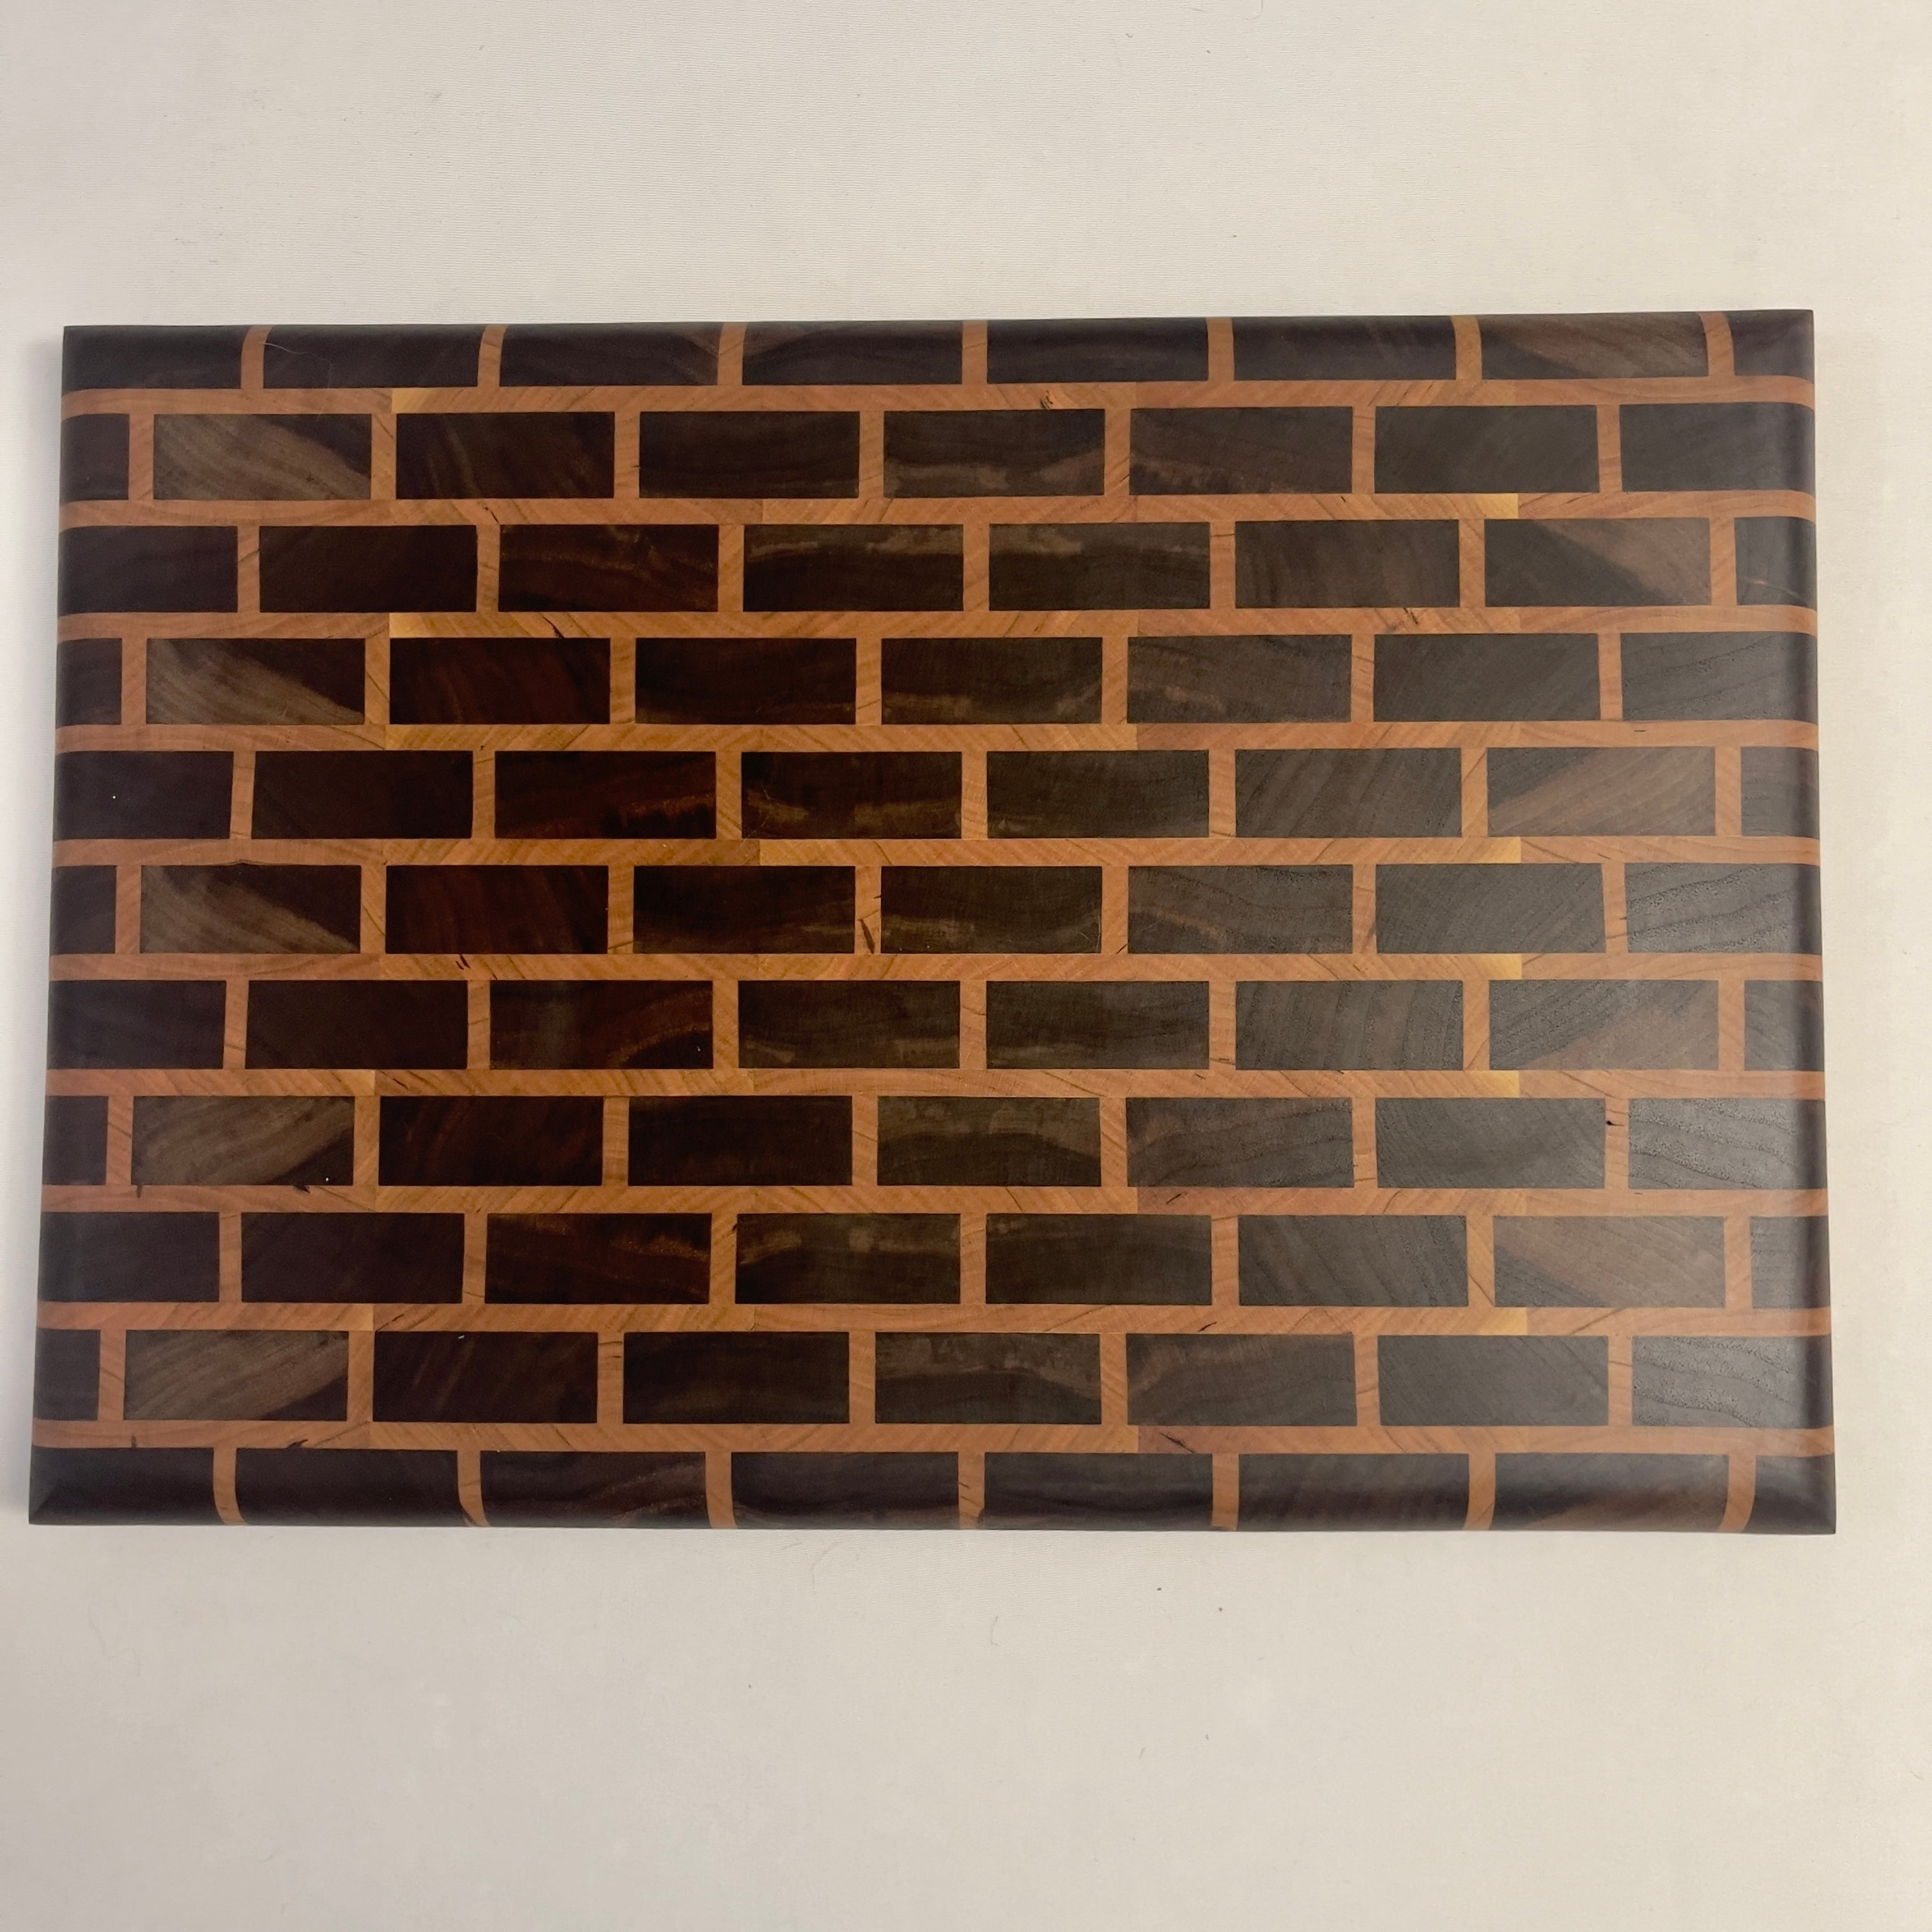 Black walnut brick wall